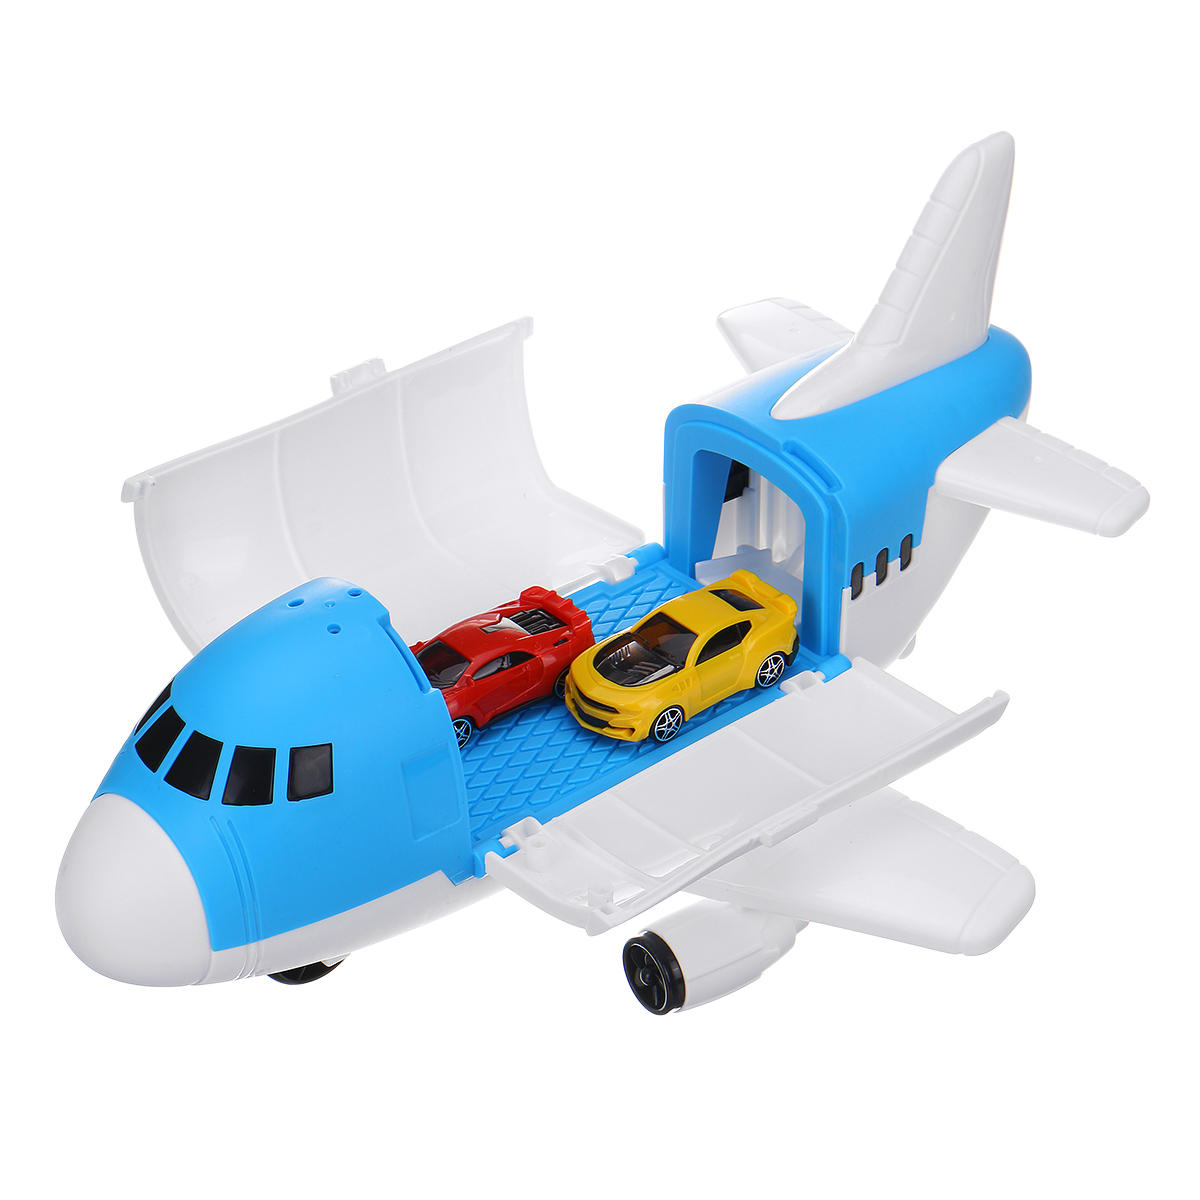 Opslag Transportvliegtuigen Model Inertia Diecast Model Car Set Speelgoed voor kinderen Gift